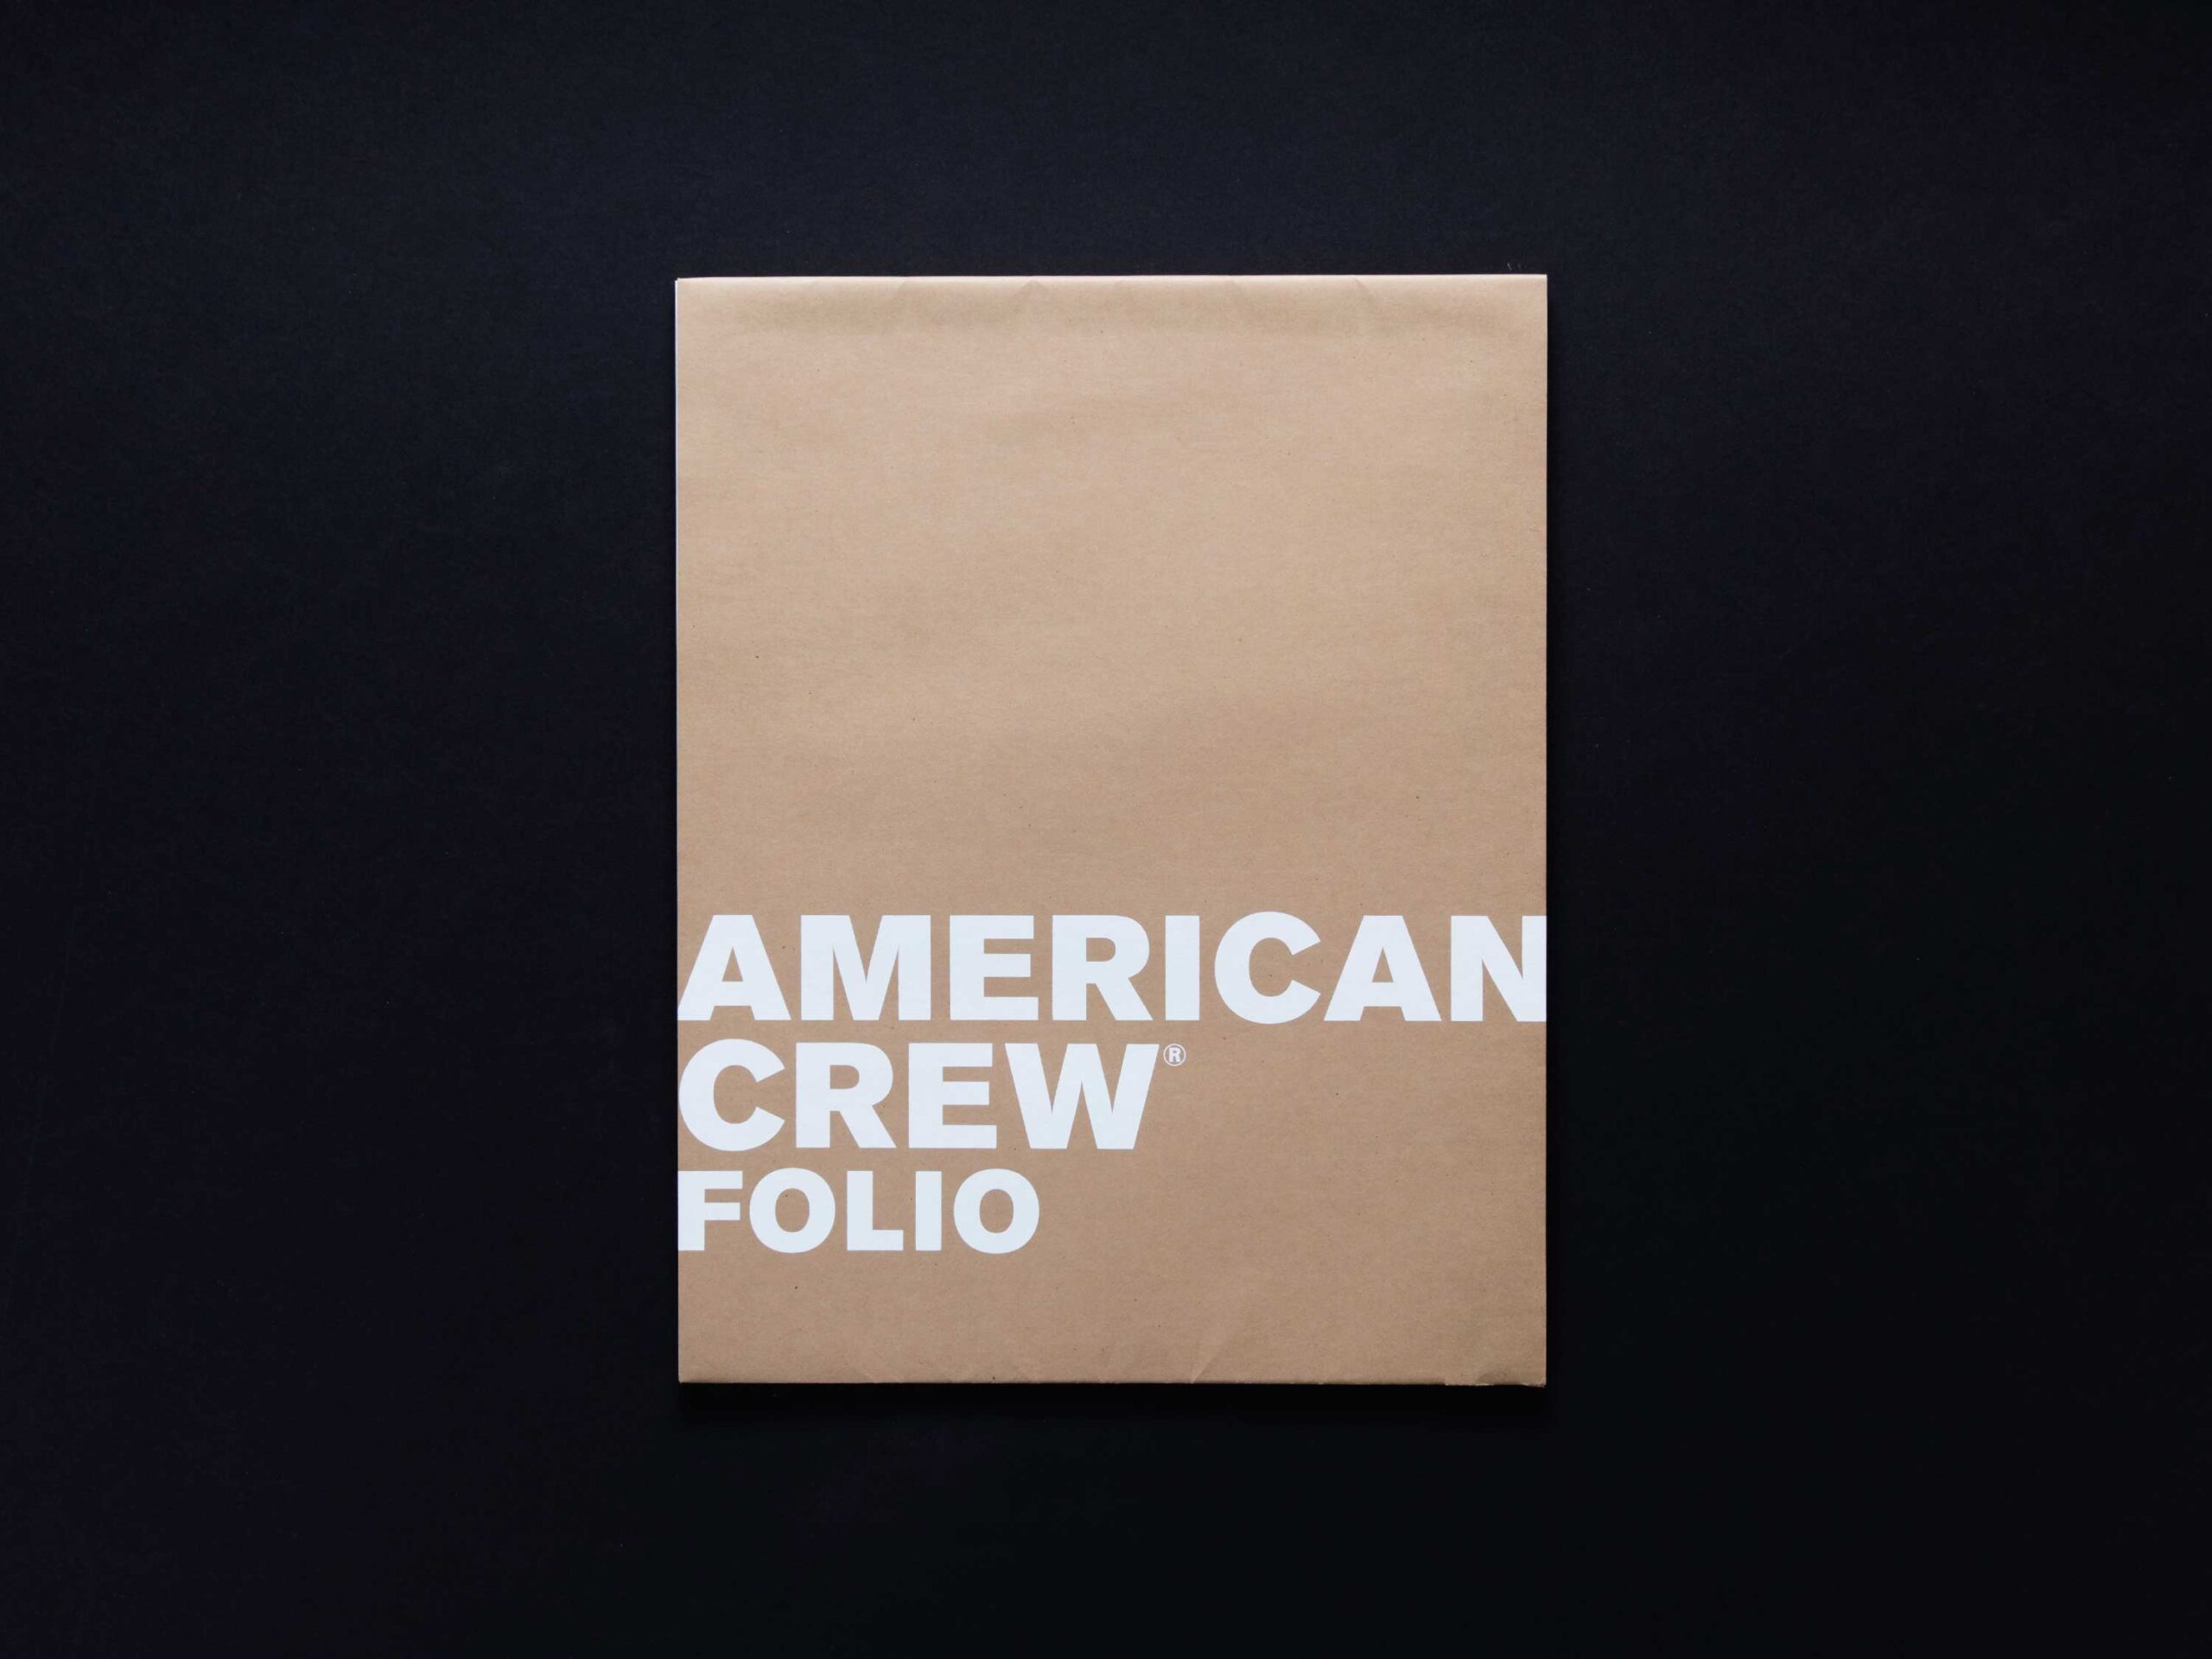  - American Crew Folio